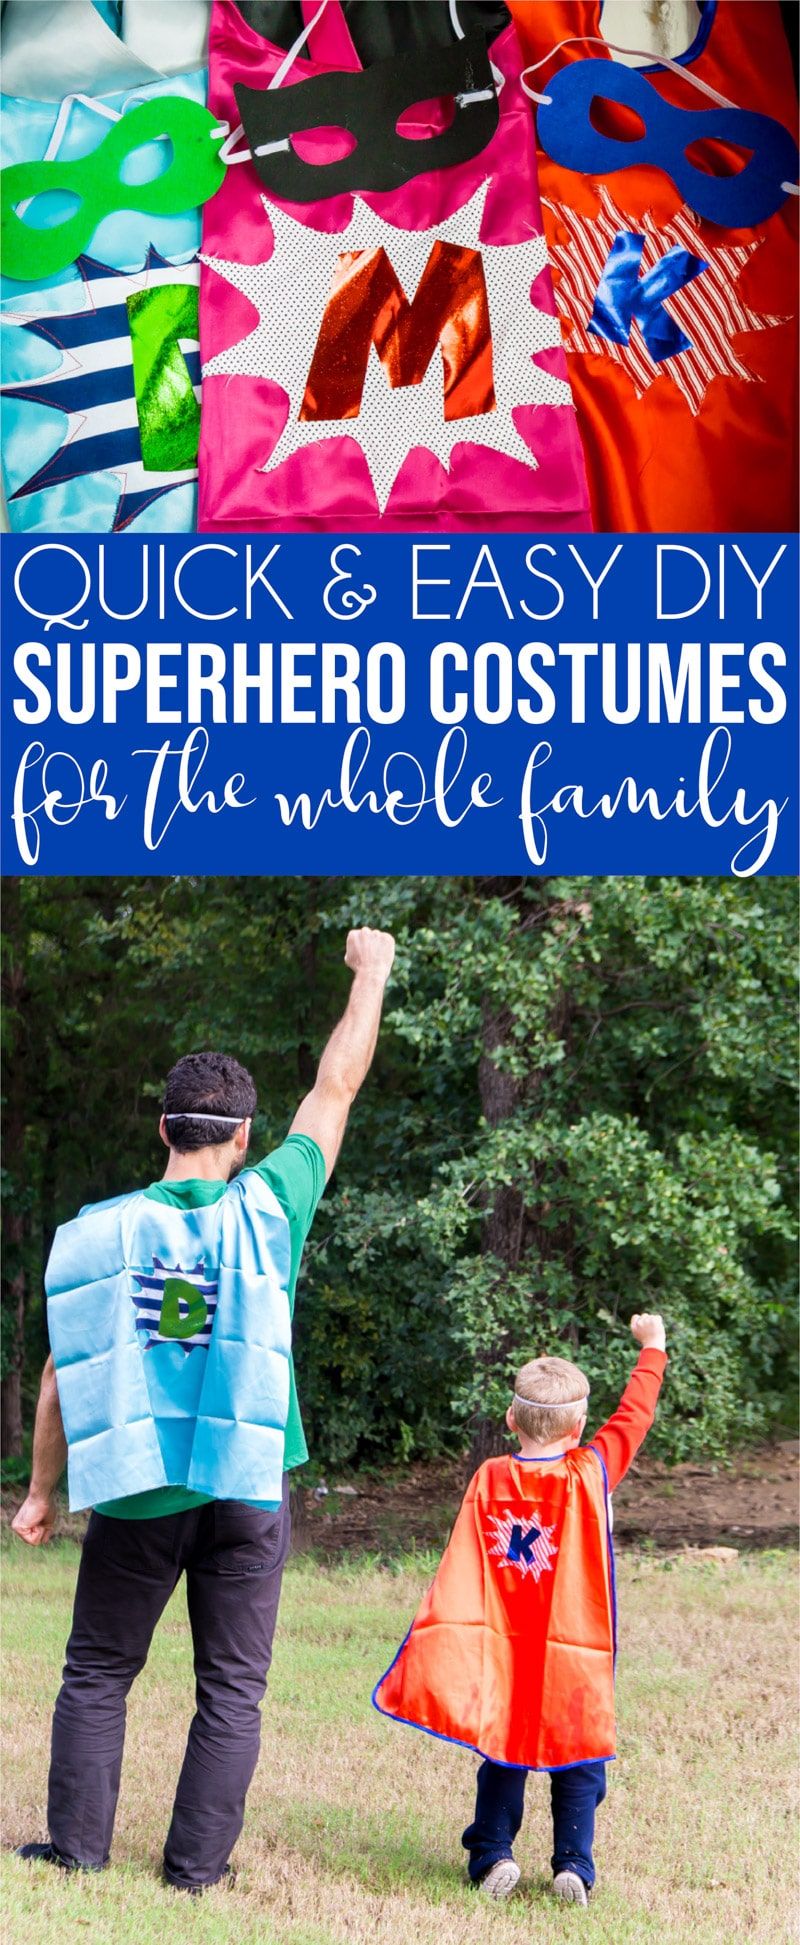 Koláž obrazů zobrazujících nápady na rodinné kostýmy superhrdinů